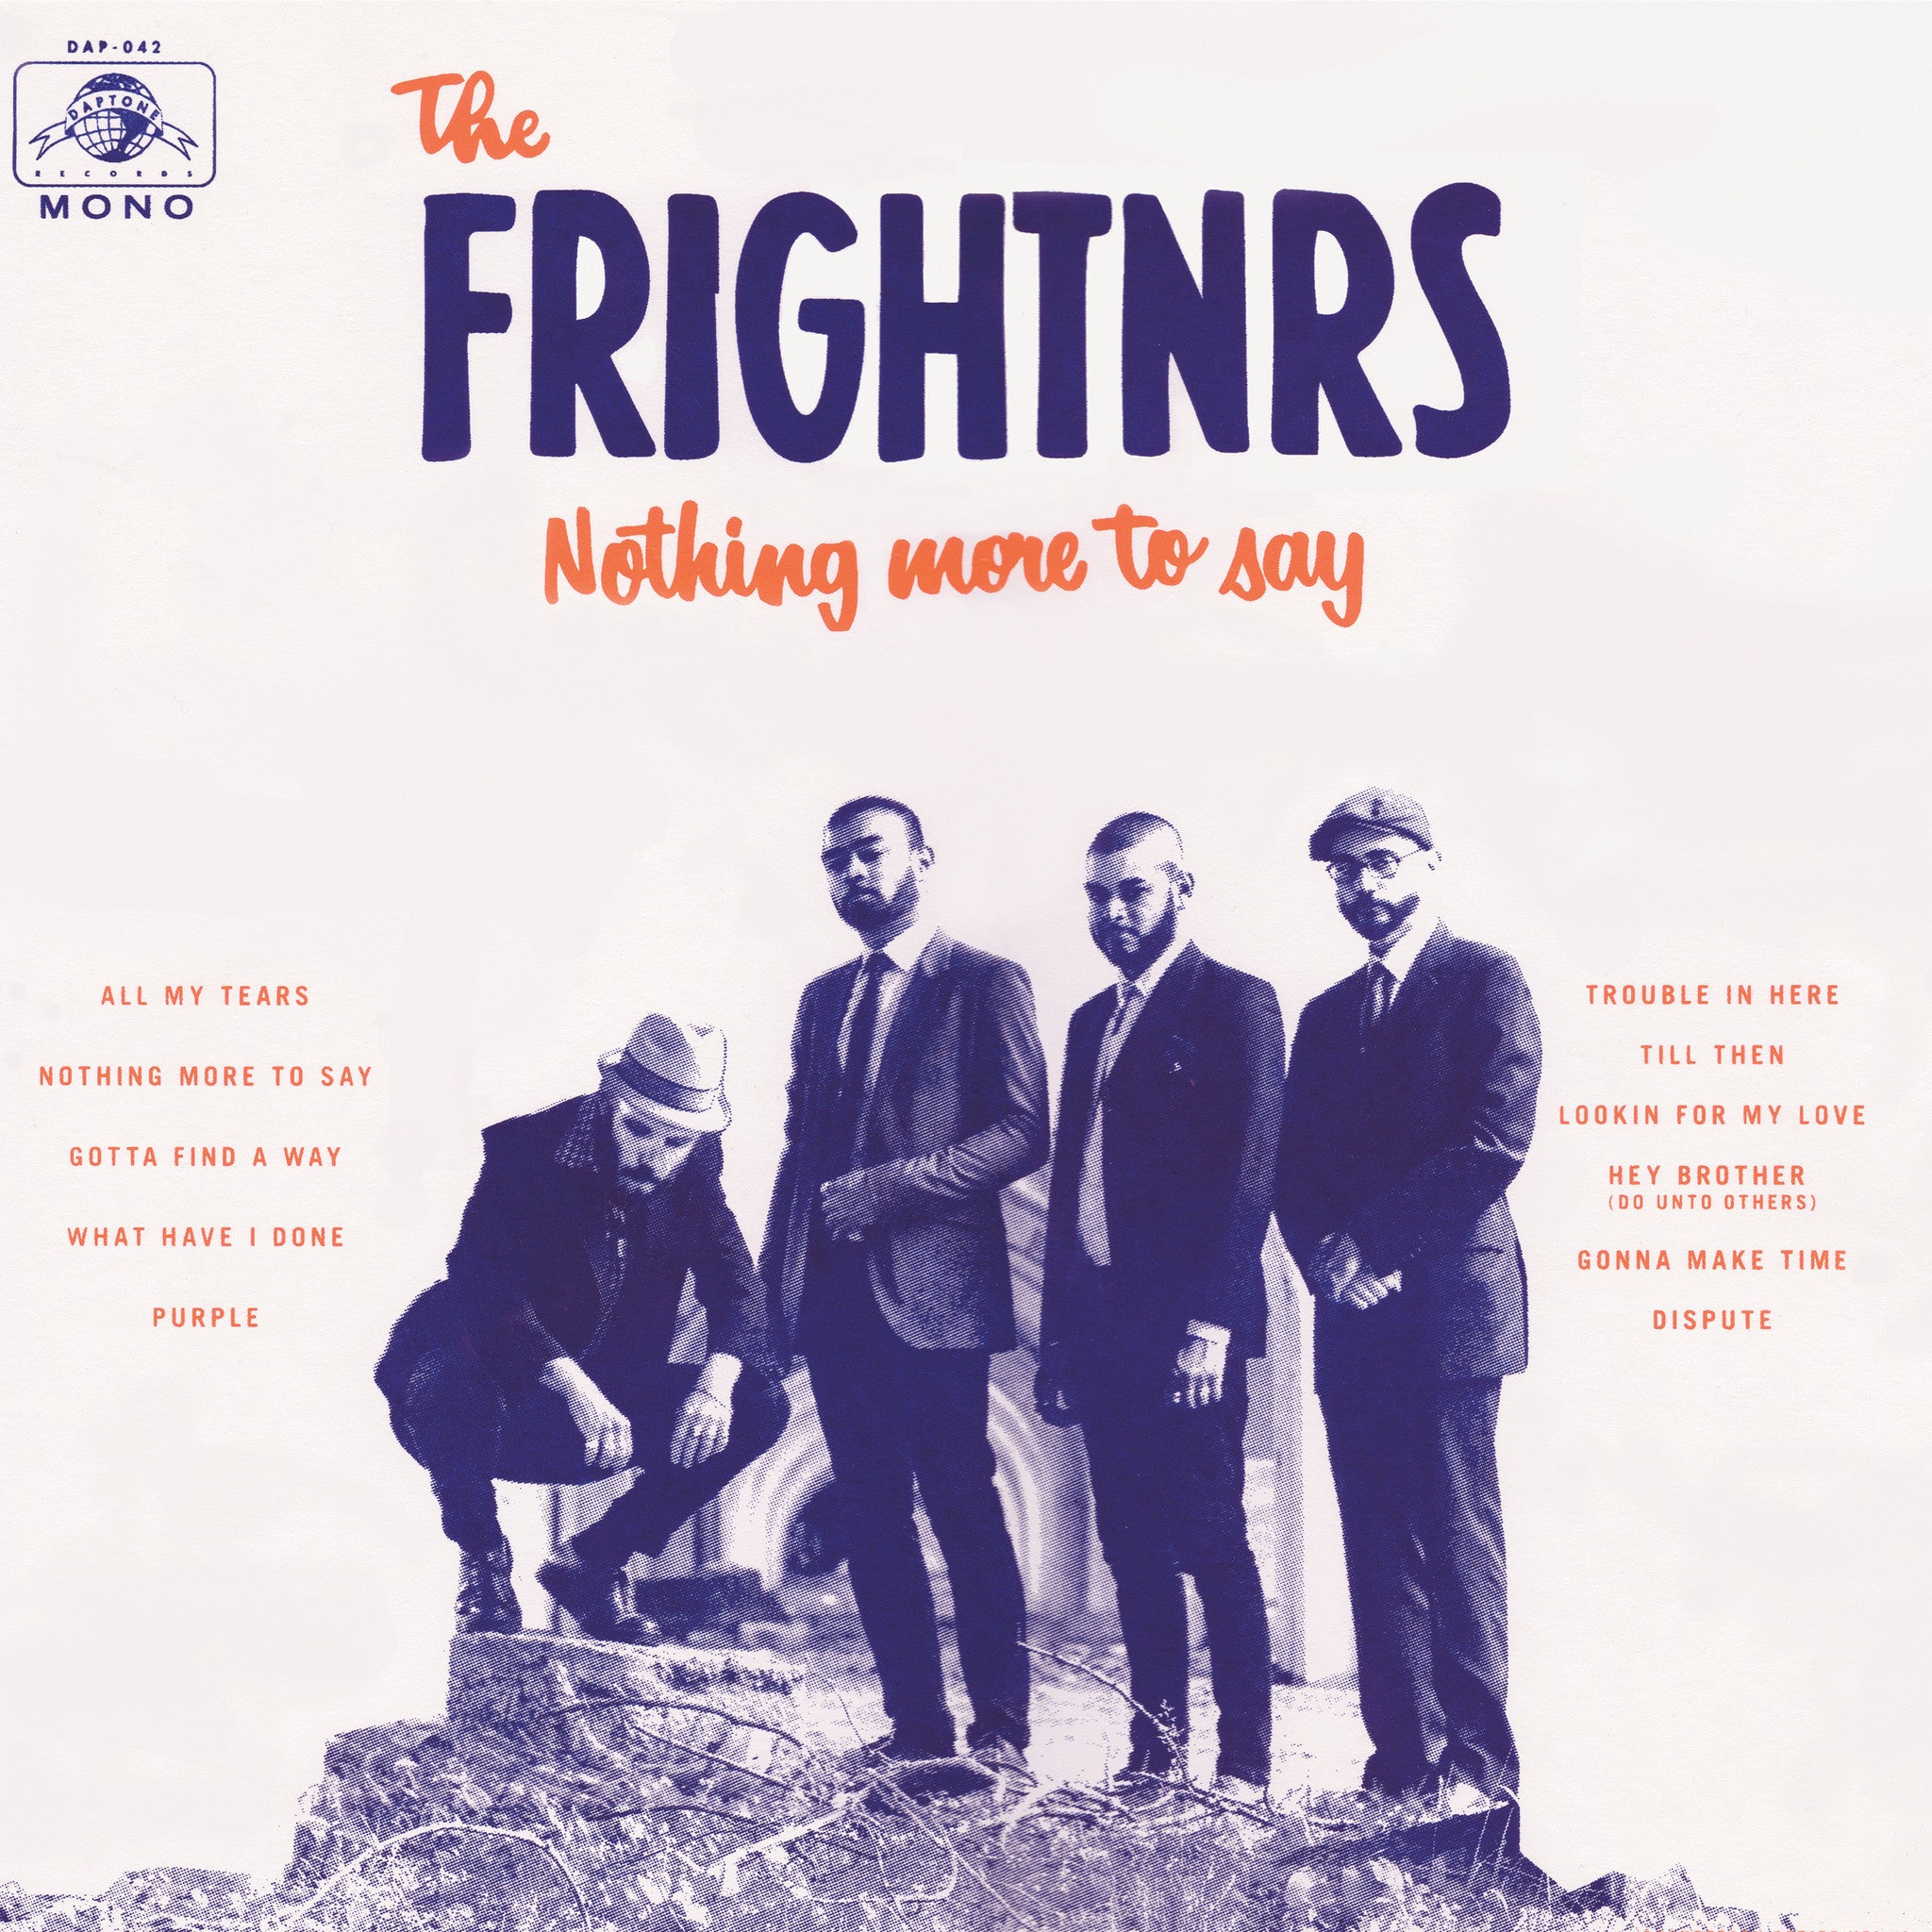 The Frightnrs - Nothing More To Say - daptonerecords - 1